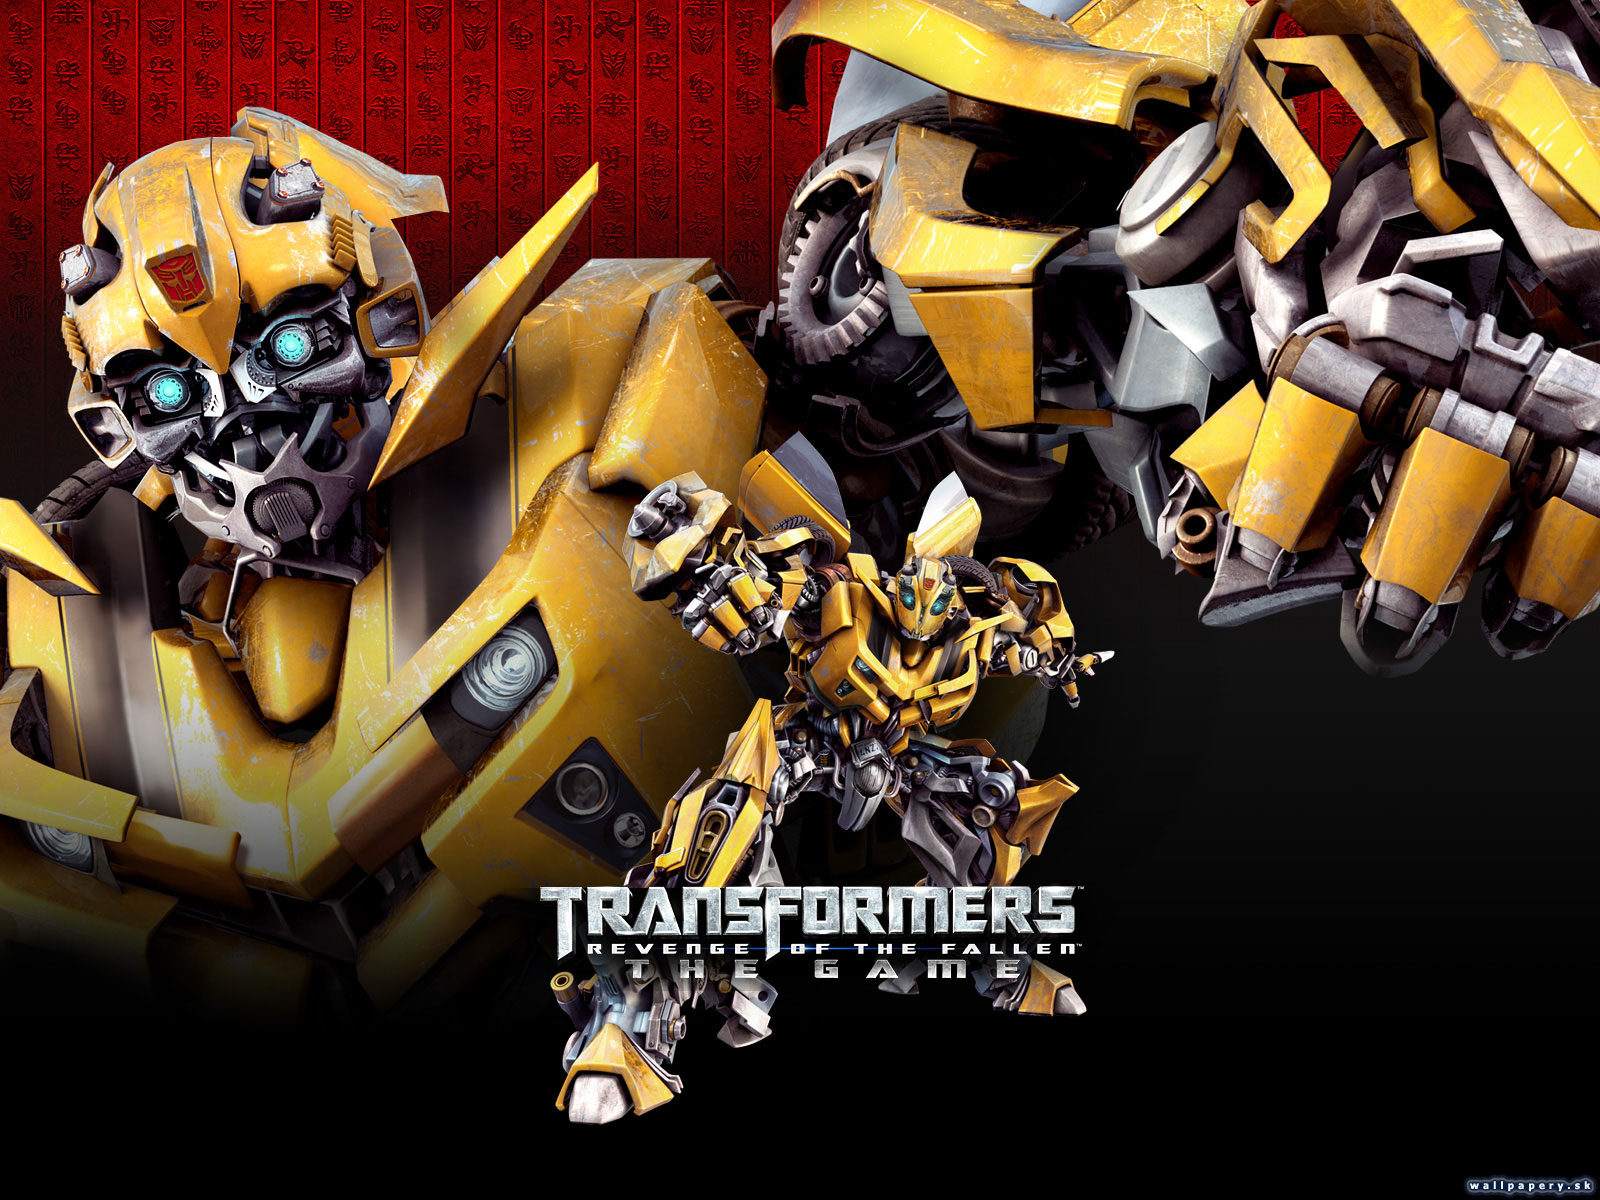 Transformers: Revenge of the Fallen - wallpaper 4